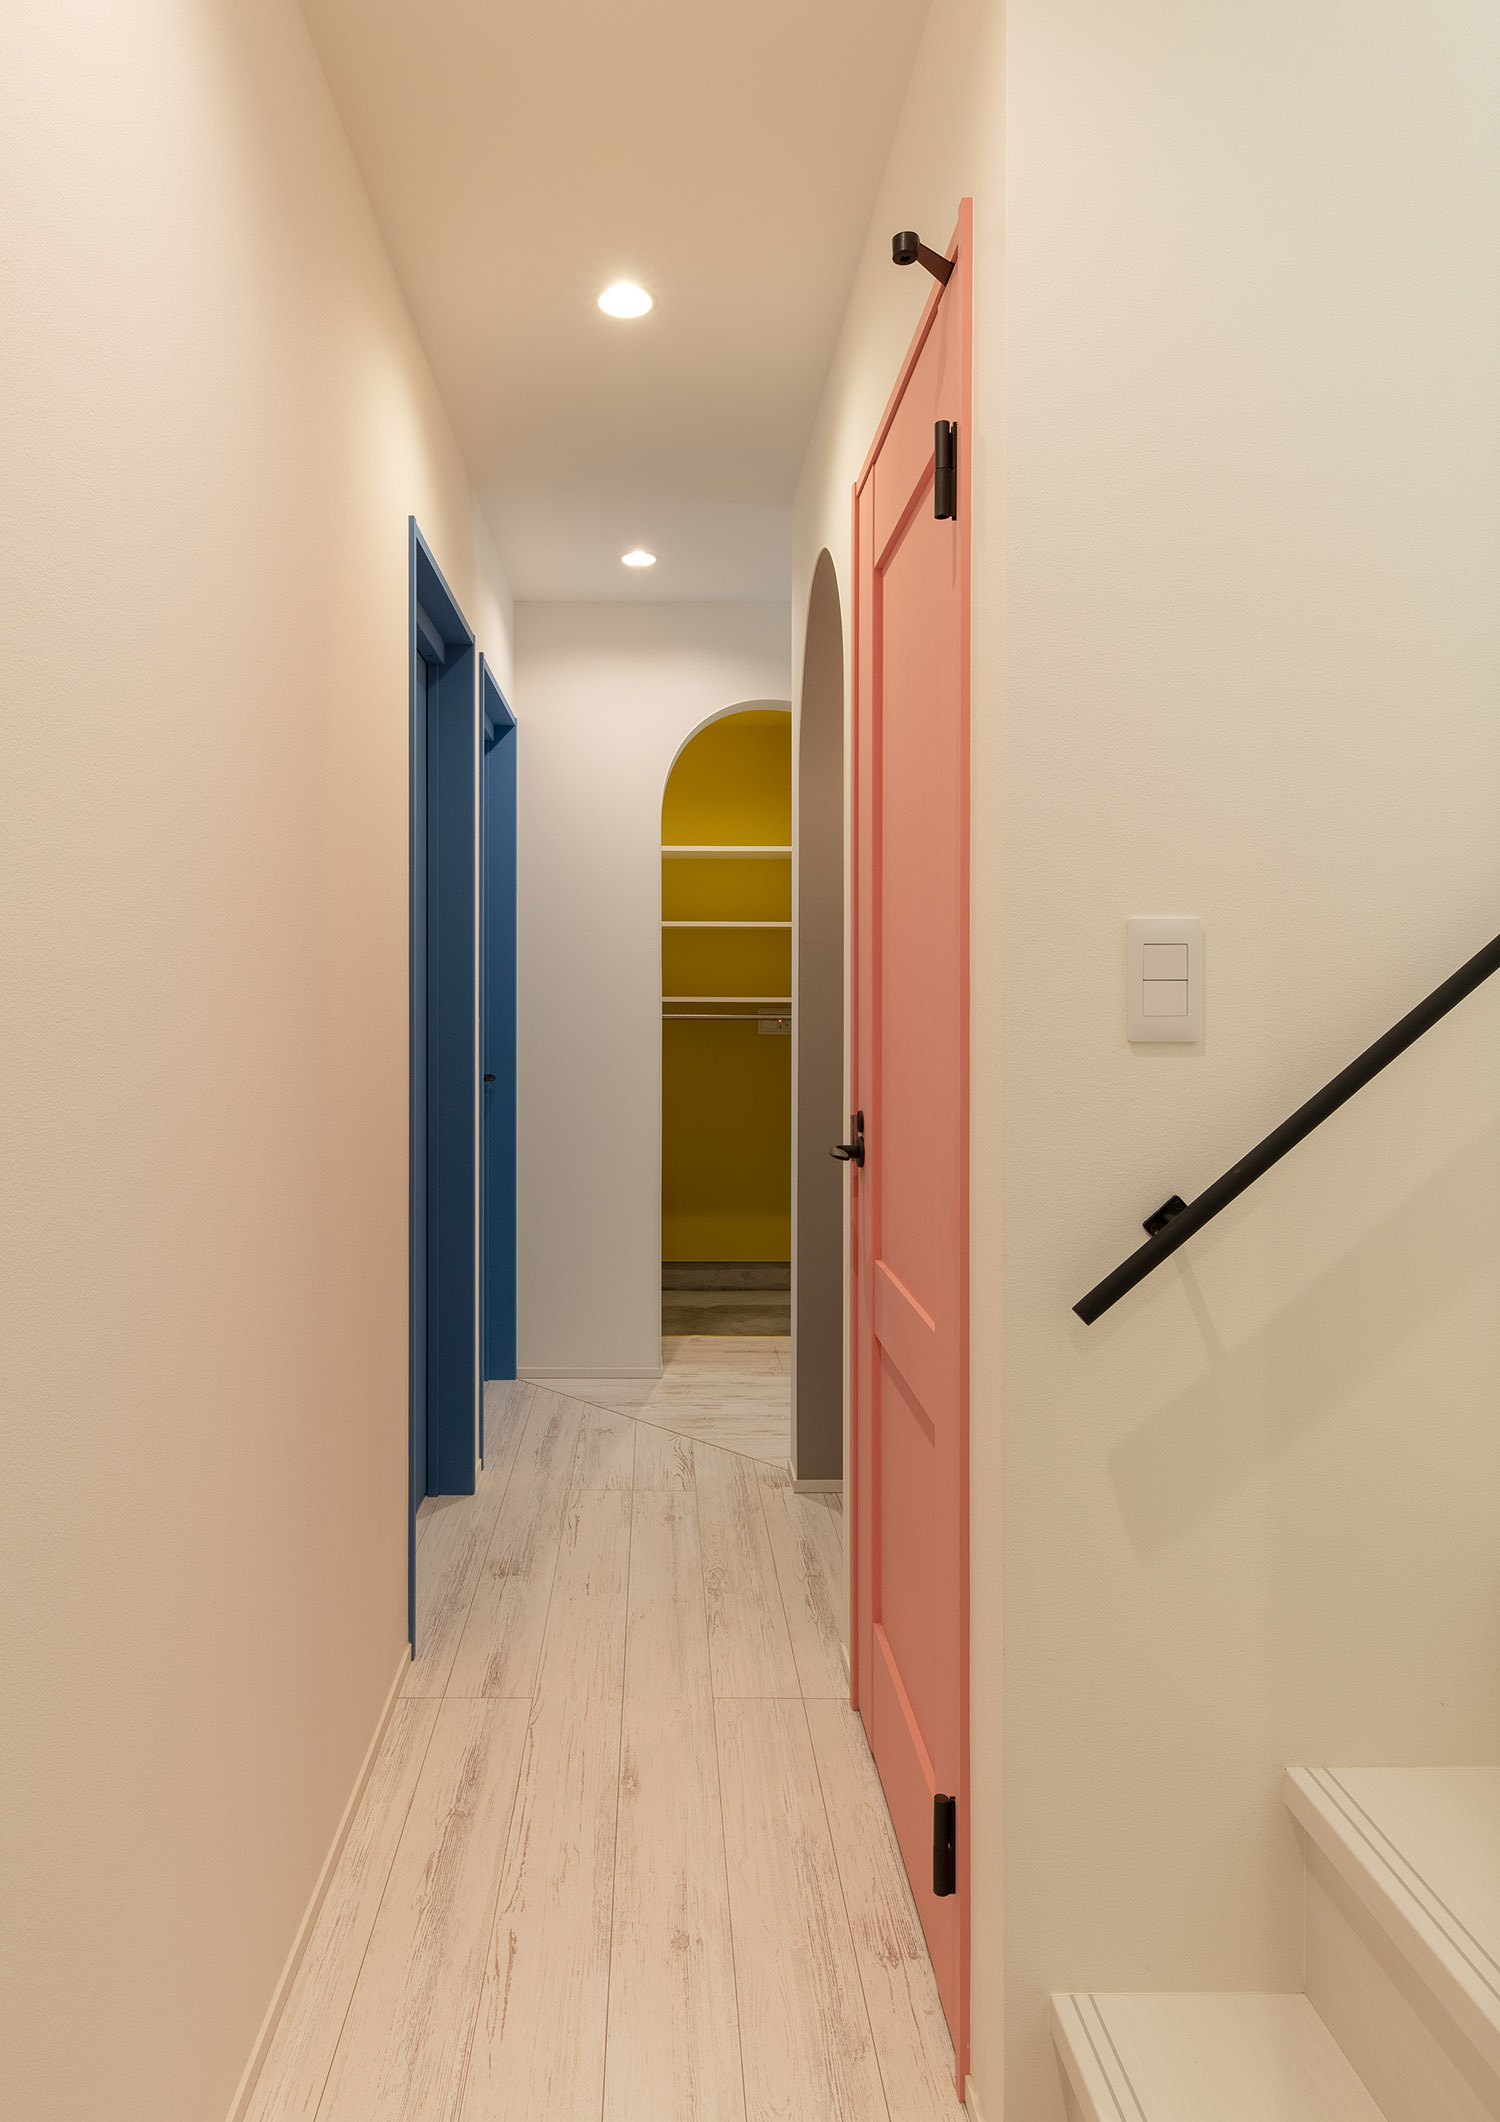 カラフルな壁紙や扉がある白を基調とした廊下・デザイン住宅